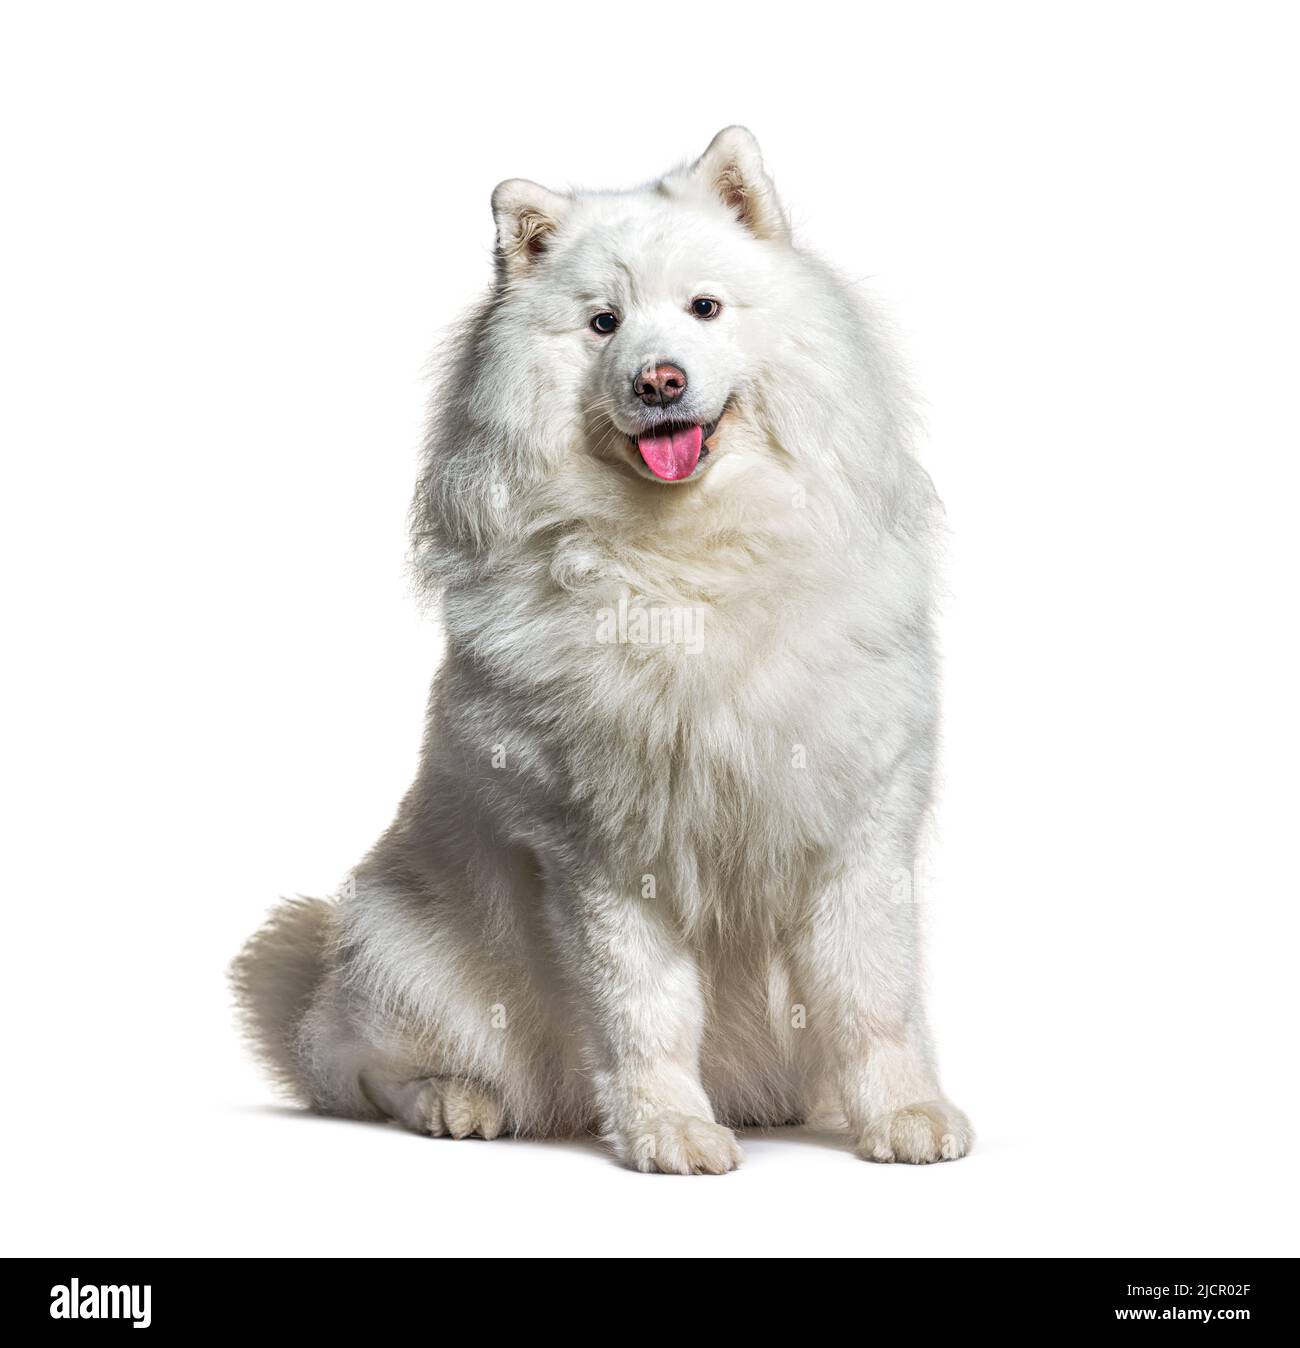 White samoyed dog Stock Photo